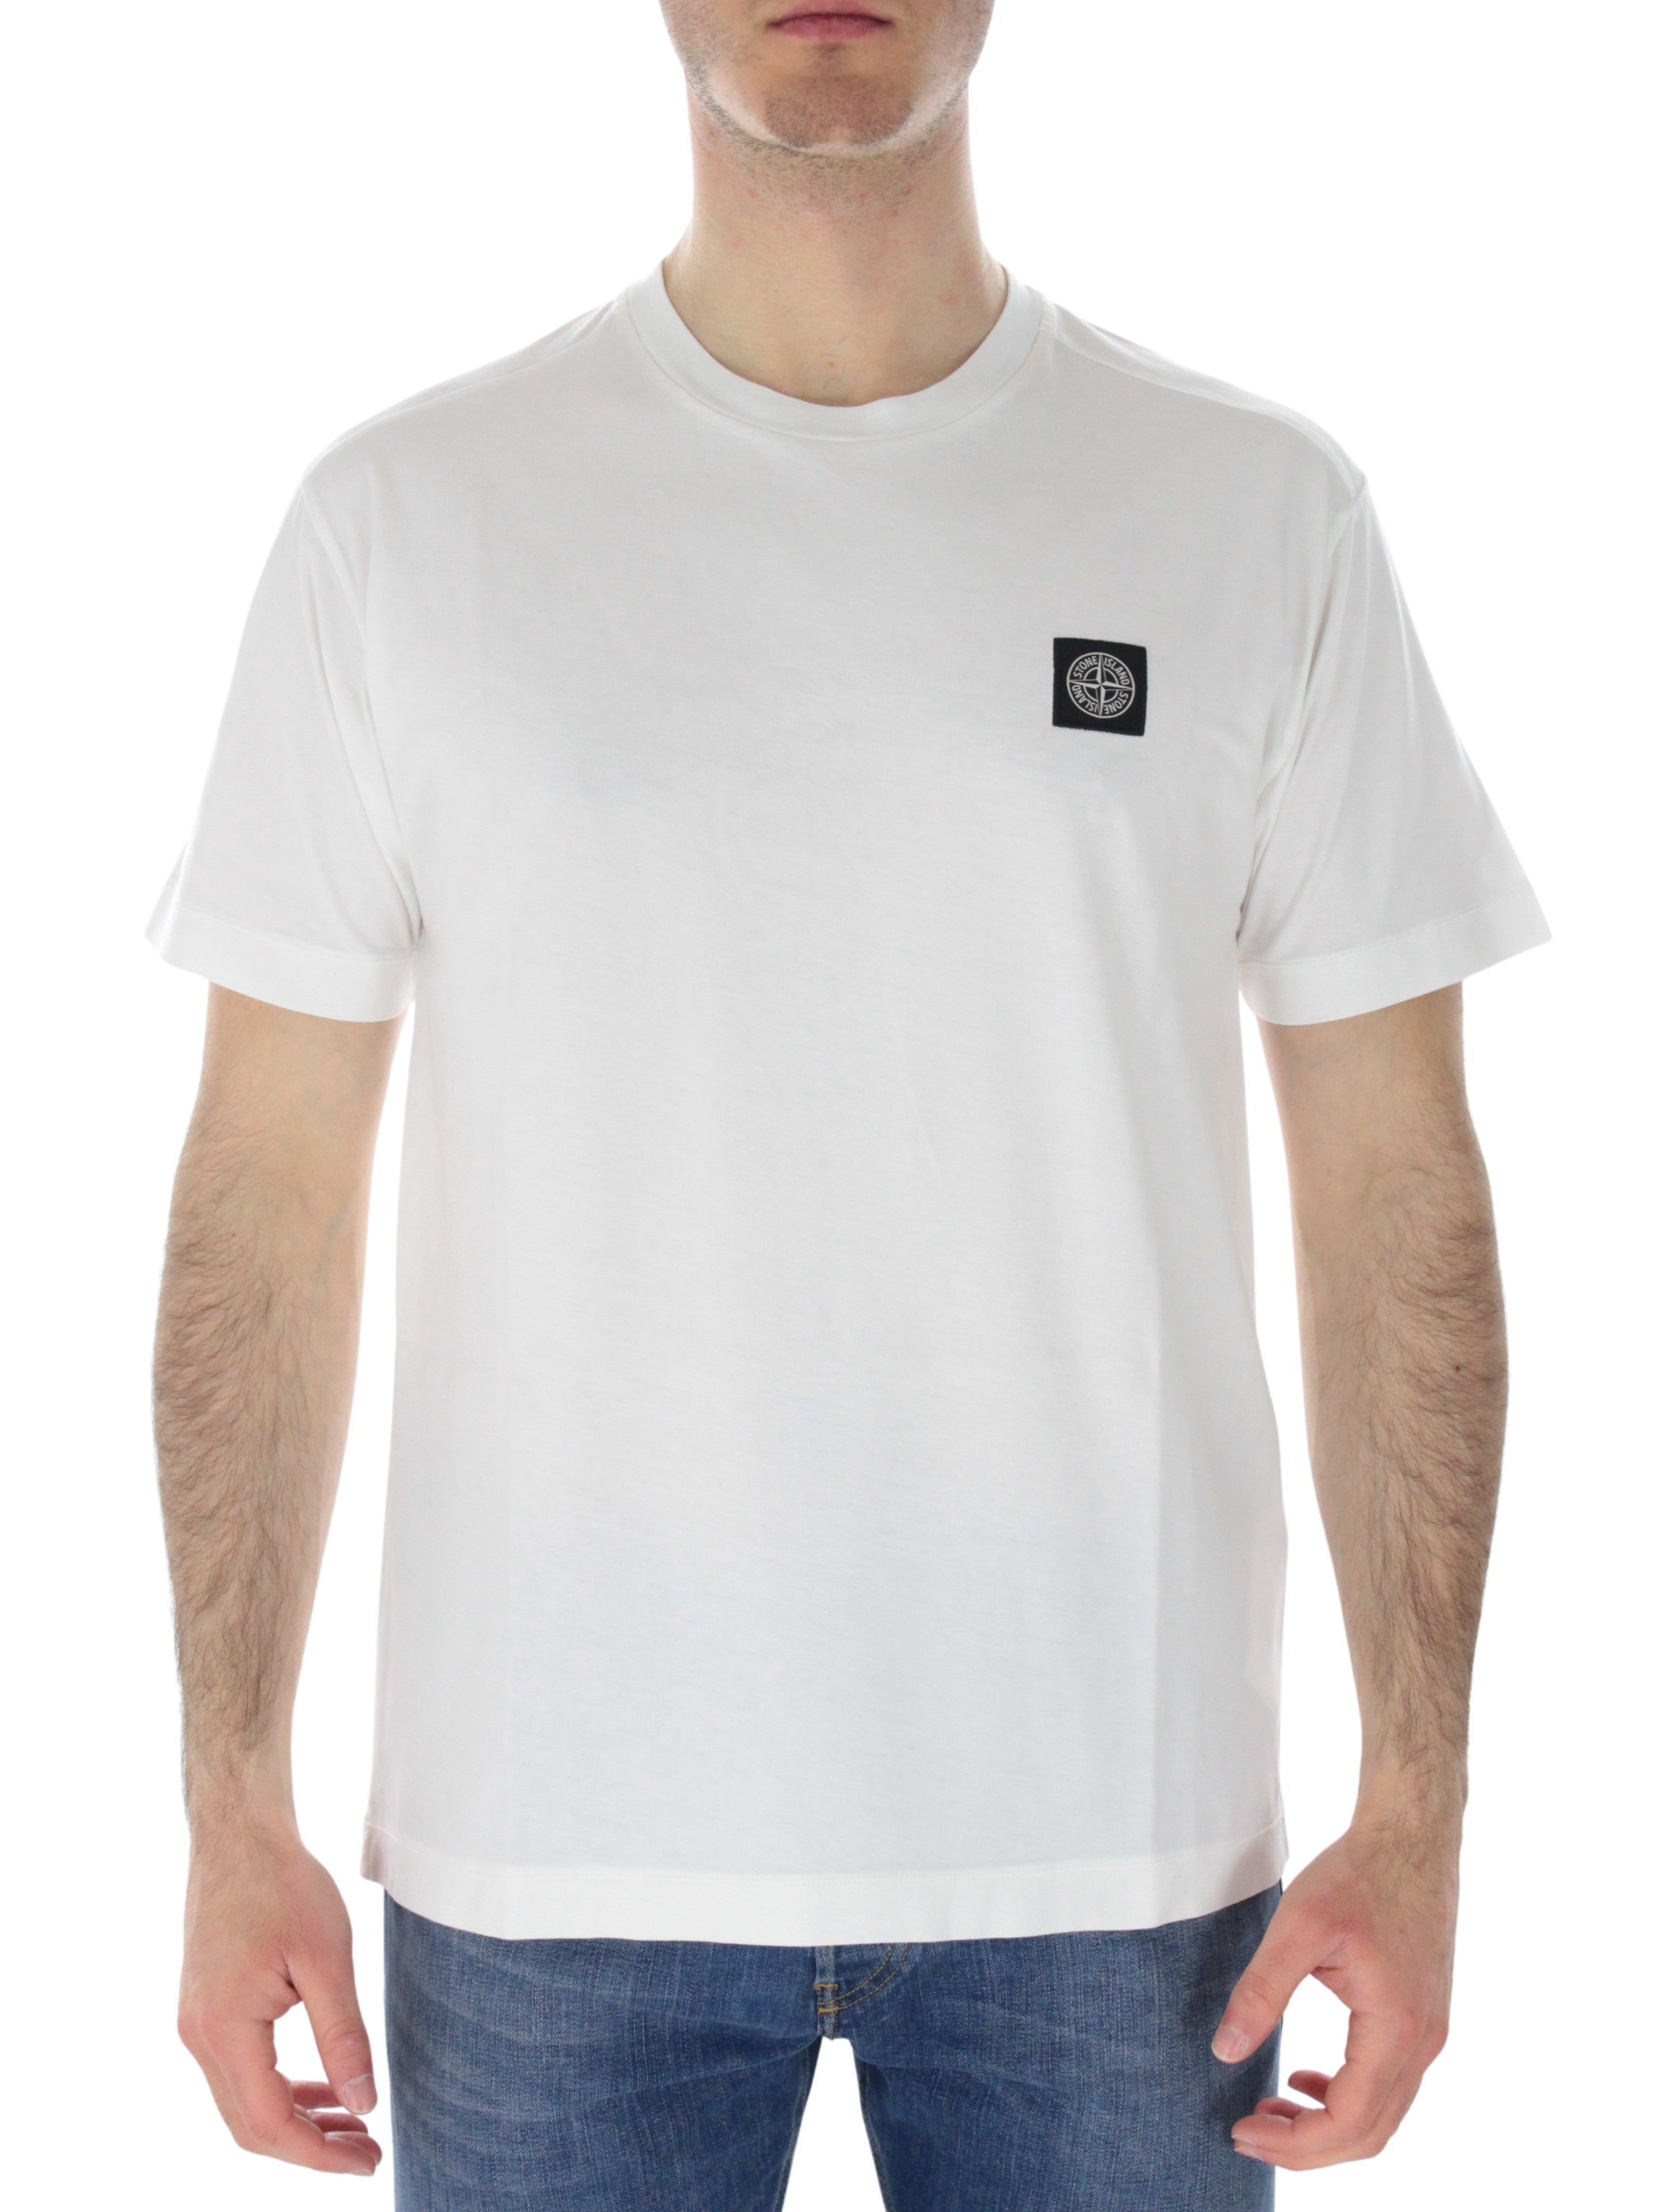 White t-shirt 101524113